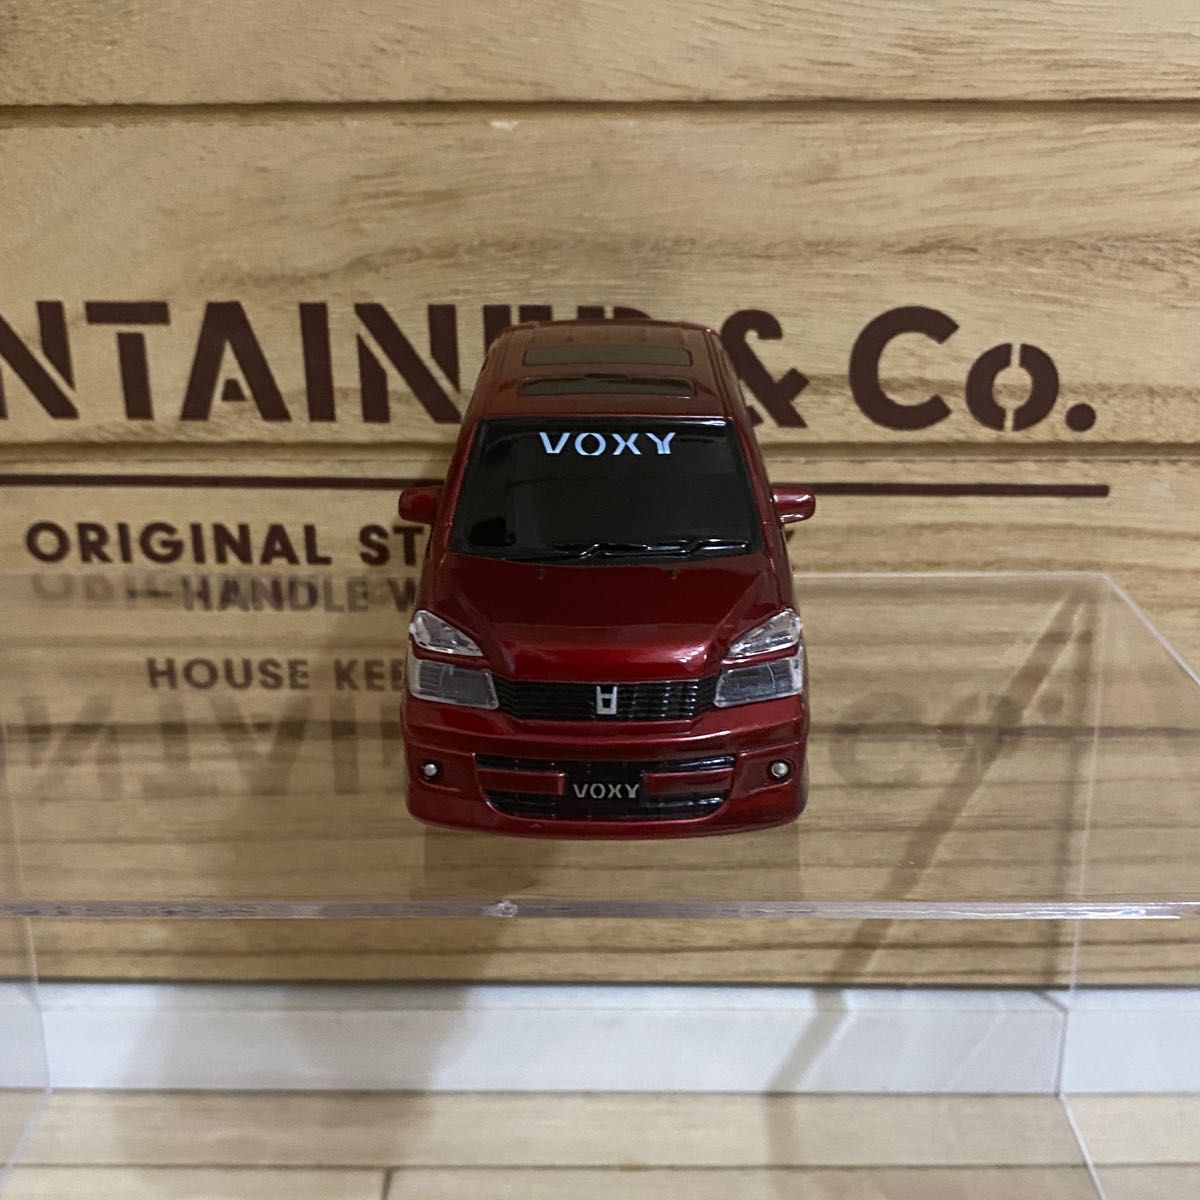 TOYOTA VOXY トヨタ ヴォクシー 60系 ミニカー プルバックカー 赤 レッド ボルドー ワインレッド